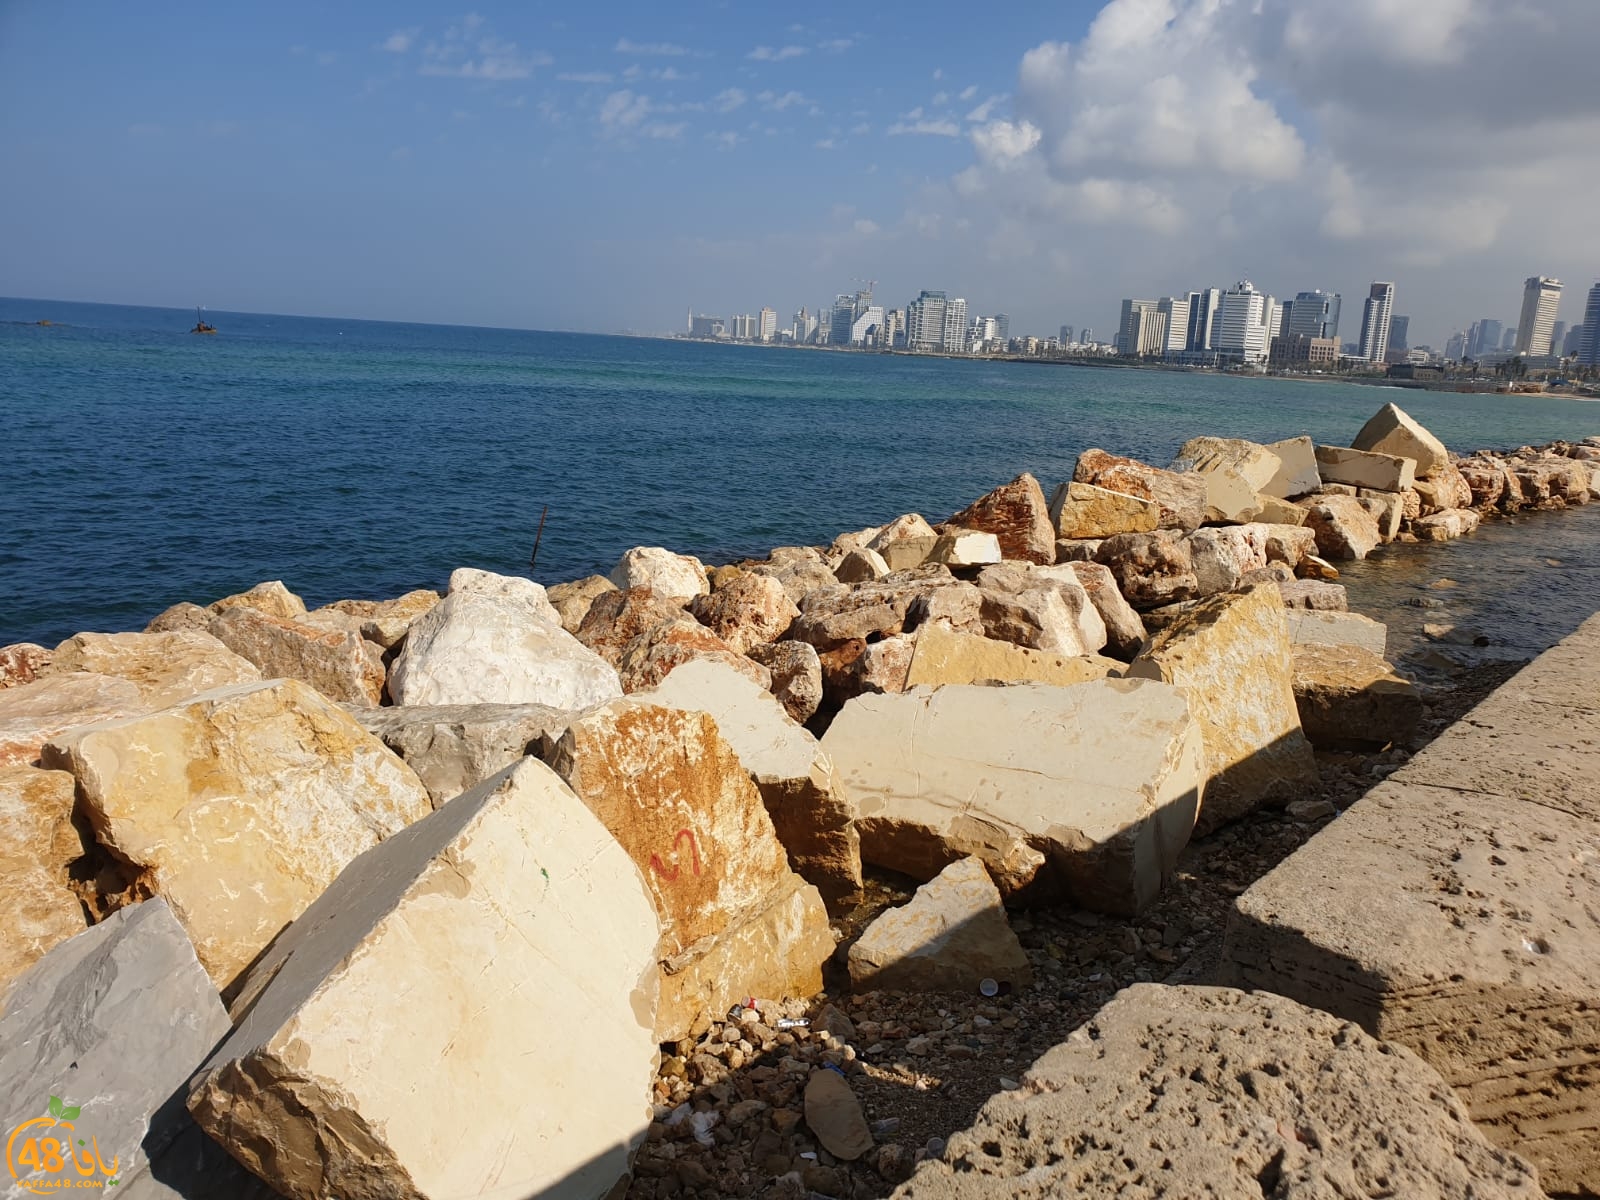  فيديو: وضع صخور ومتاريس على مدخل ميناء يافا الشمالي